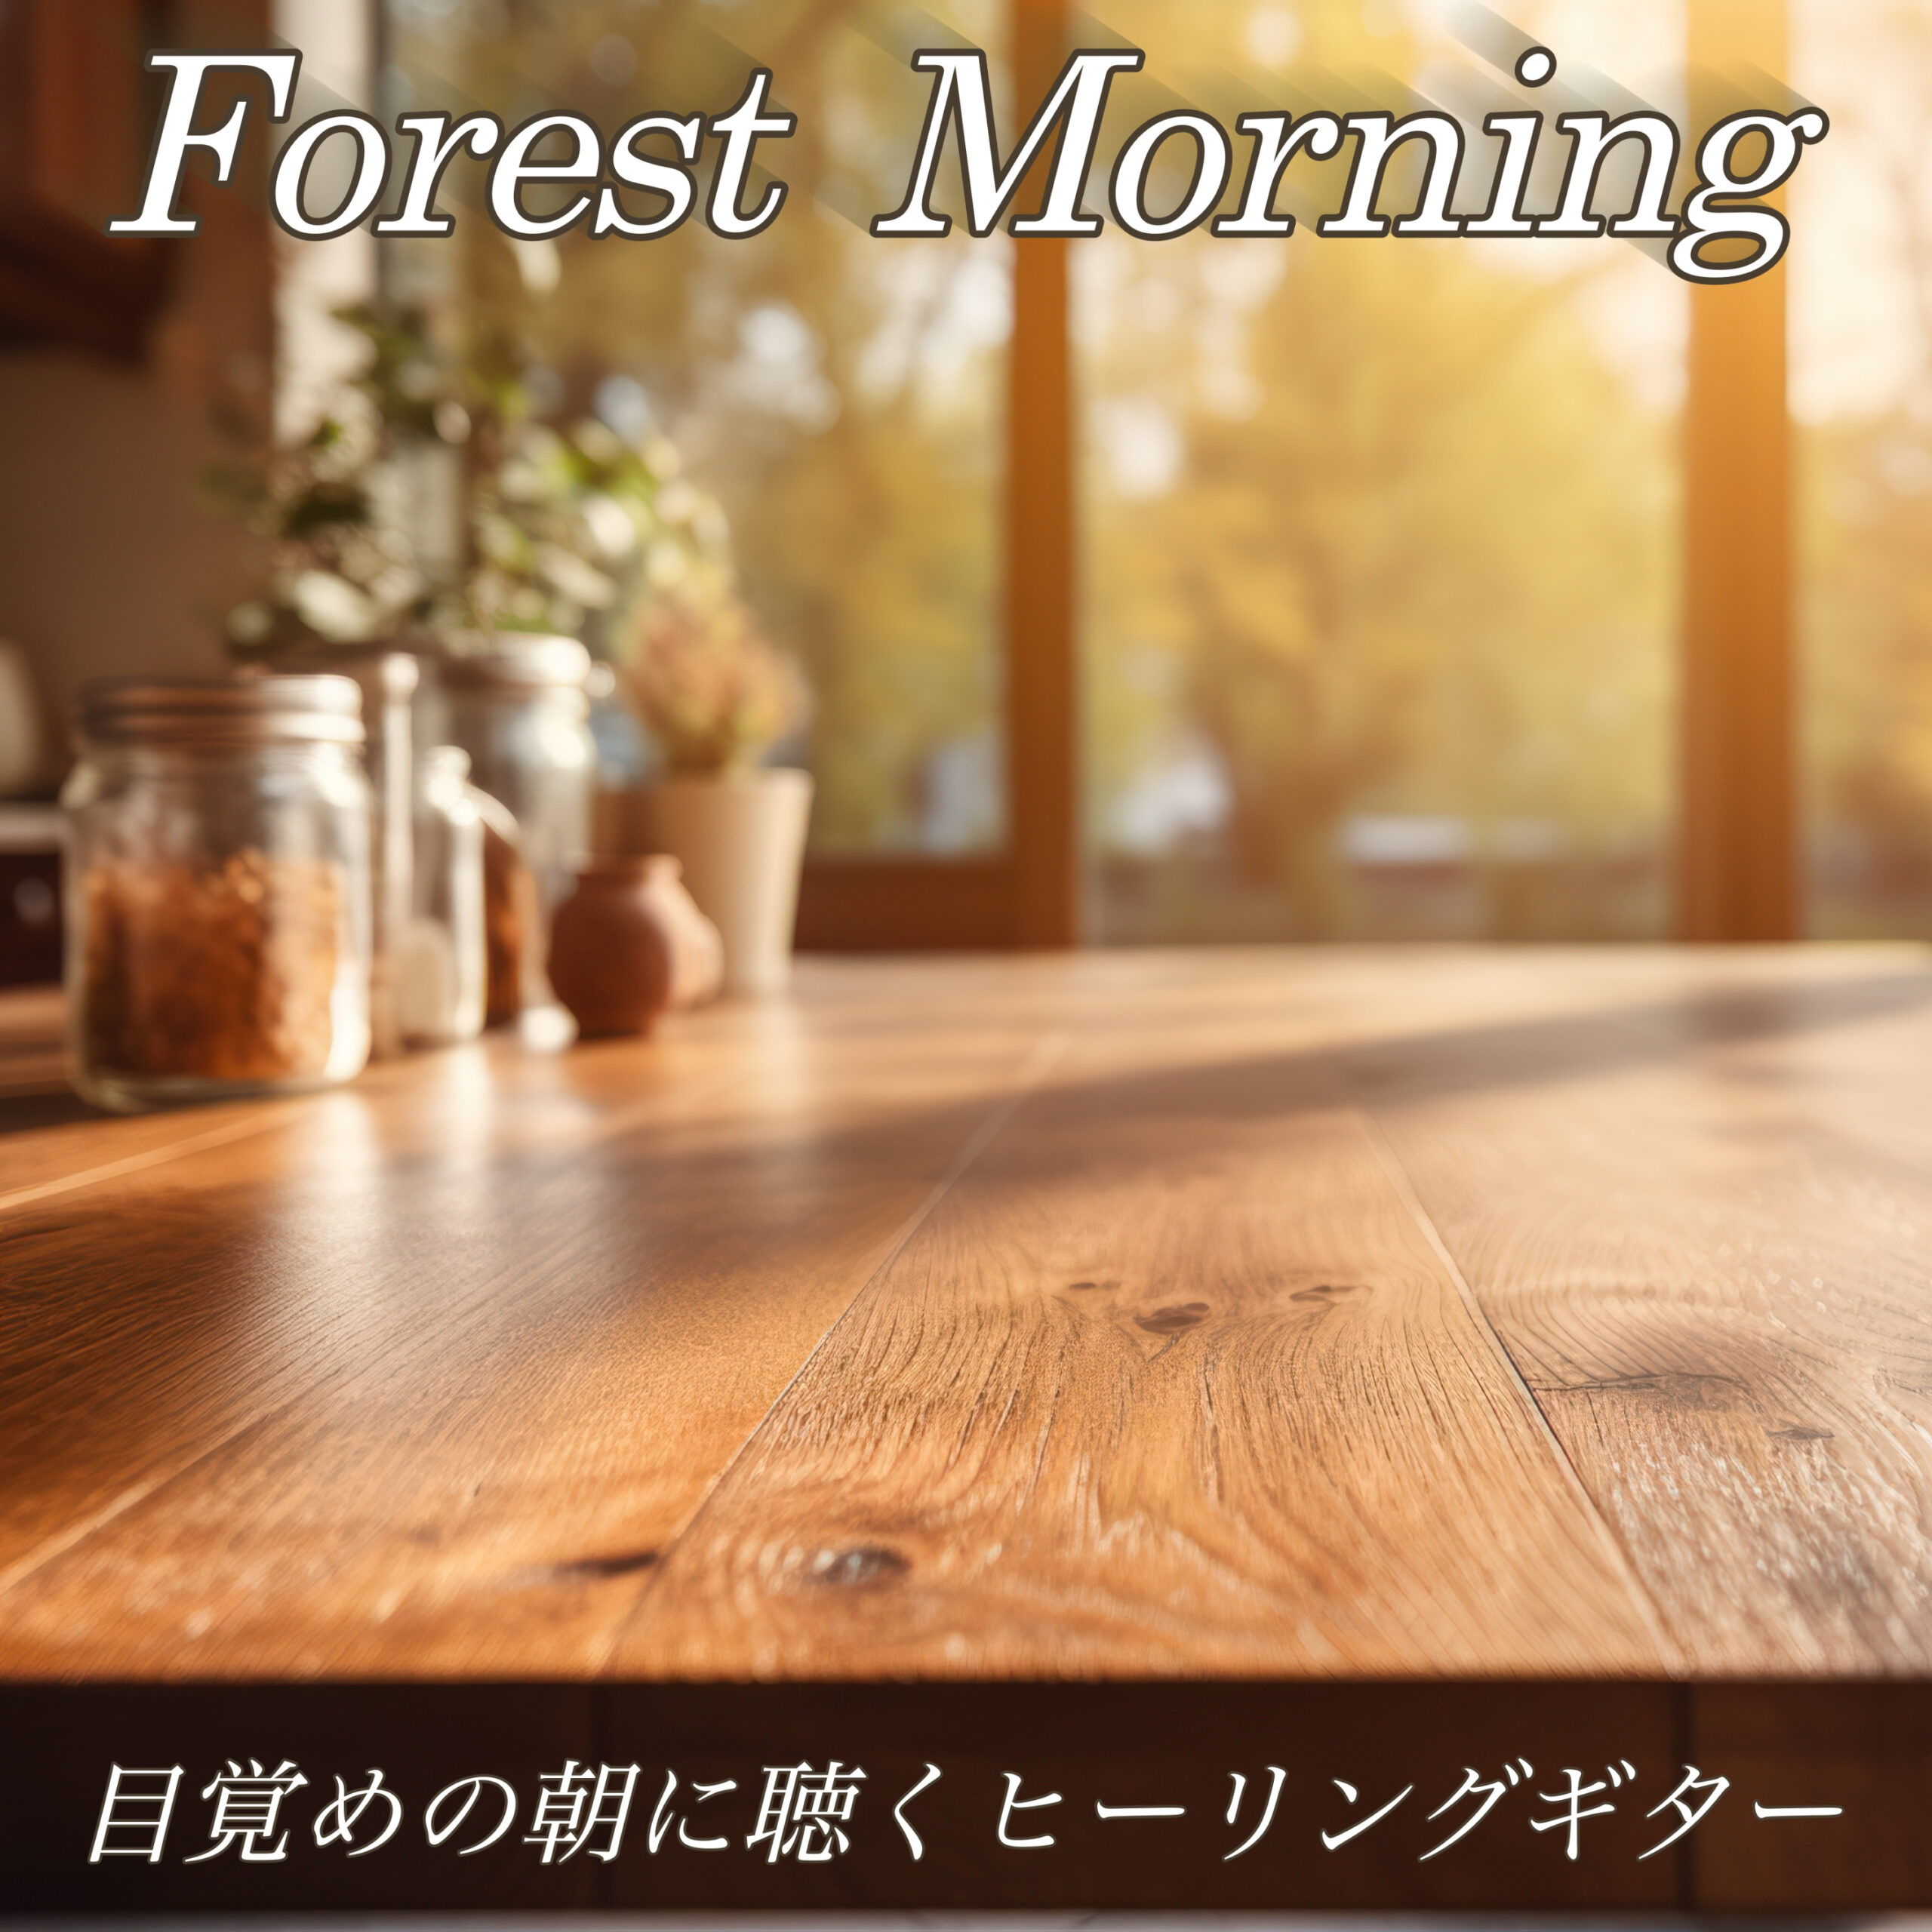 Forest Morning 目覚めの朝に聴くヒーリングギター おうちカフェBGM 作業用BGM おしゃれヒーリング